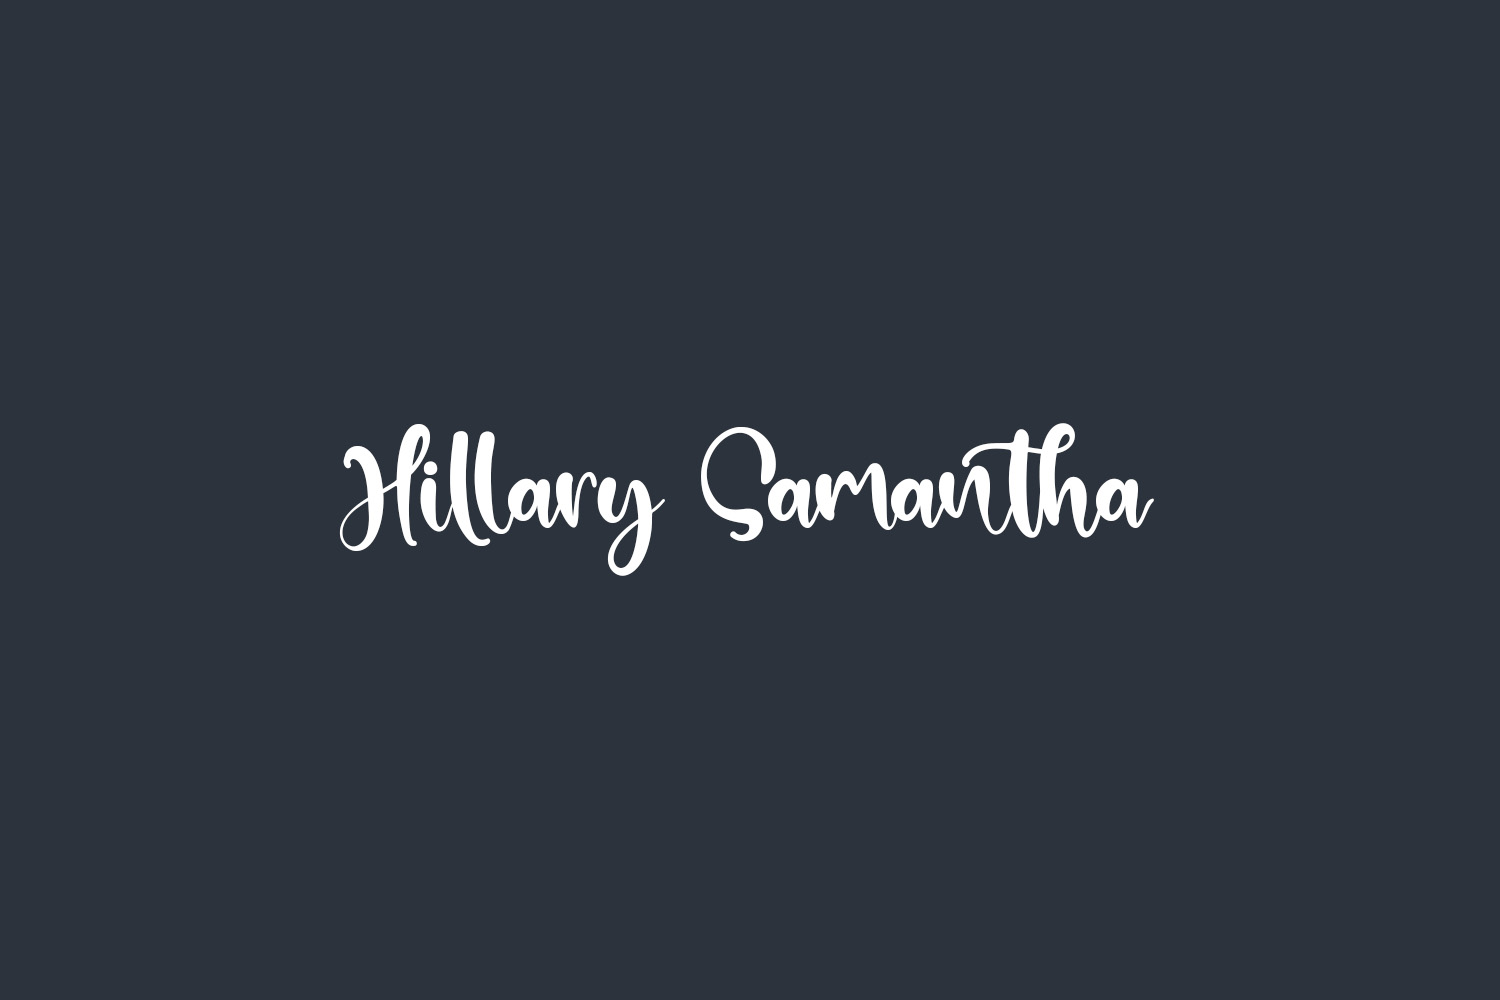 Hillary Samantha Free Font